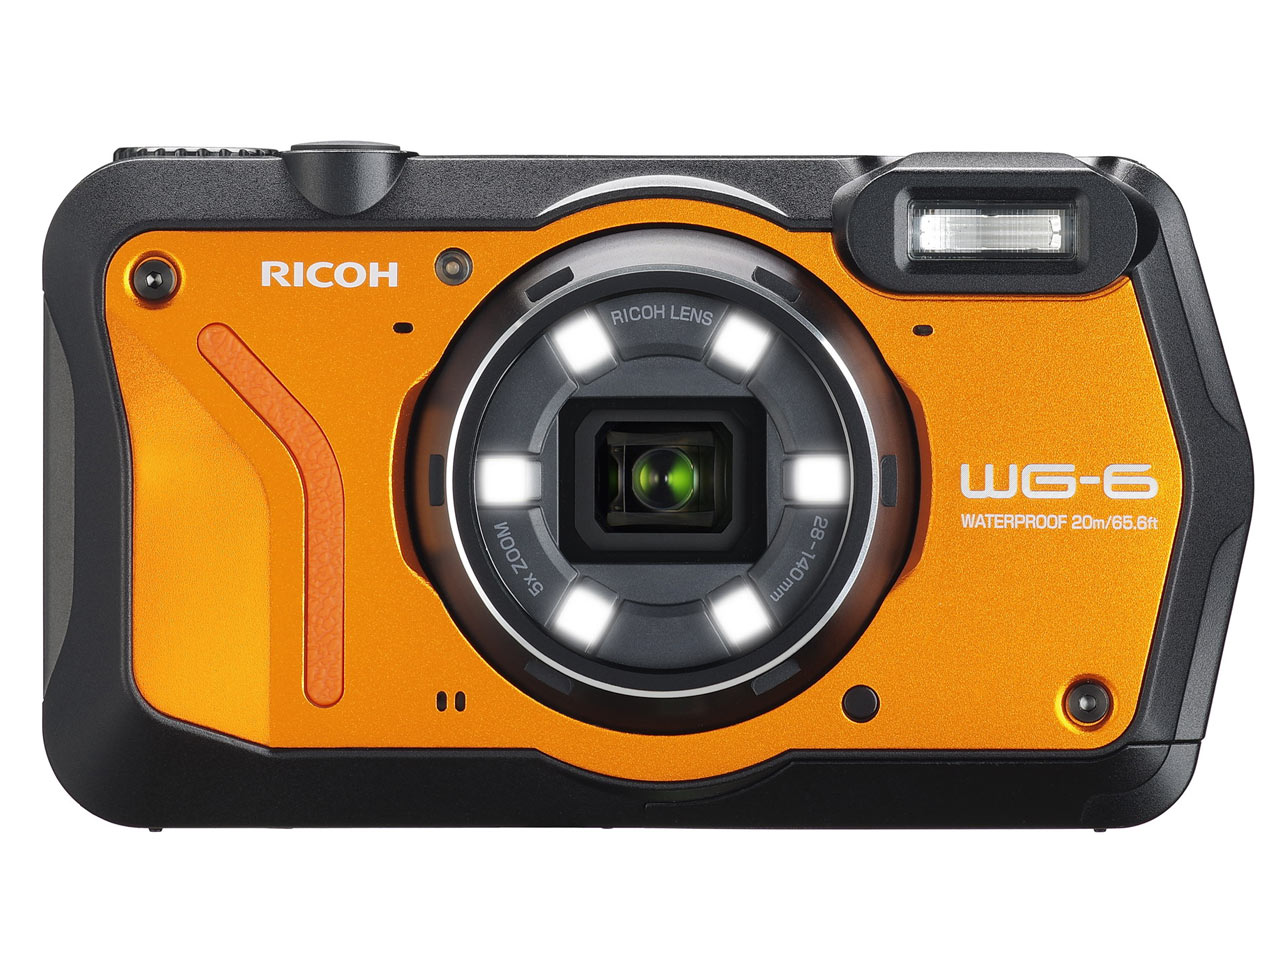 RICOH デジタルカメラ WG-6 オレンジ